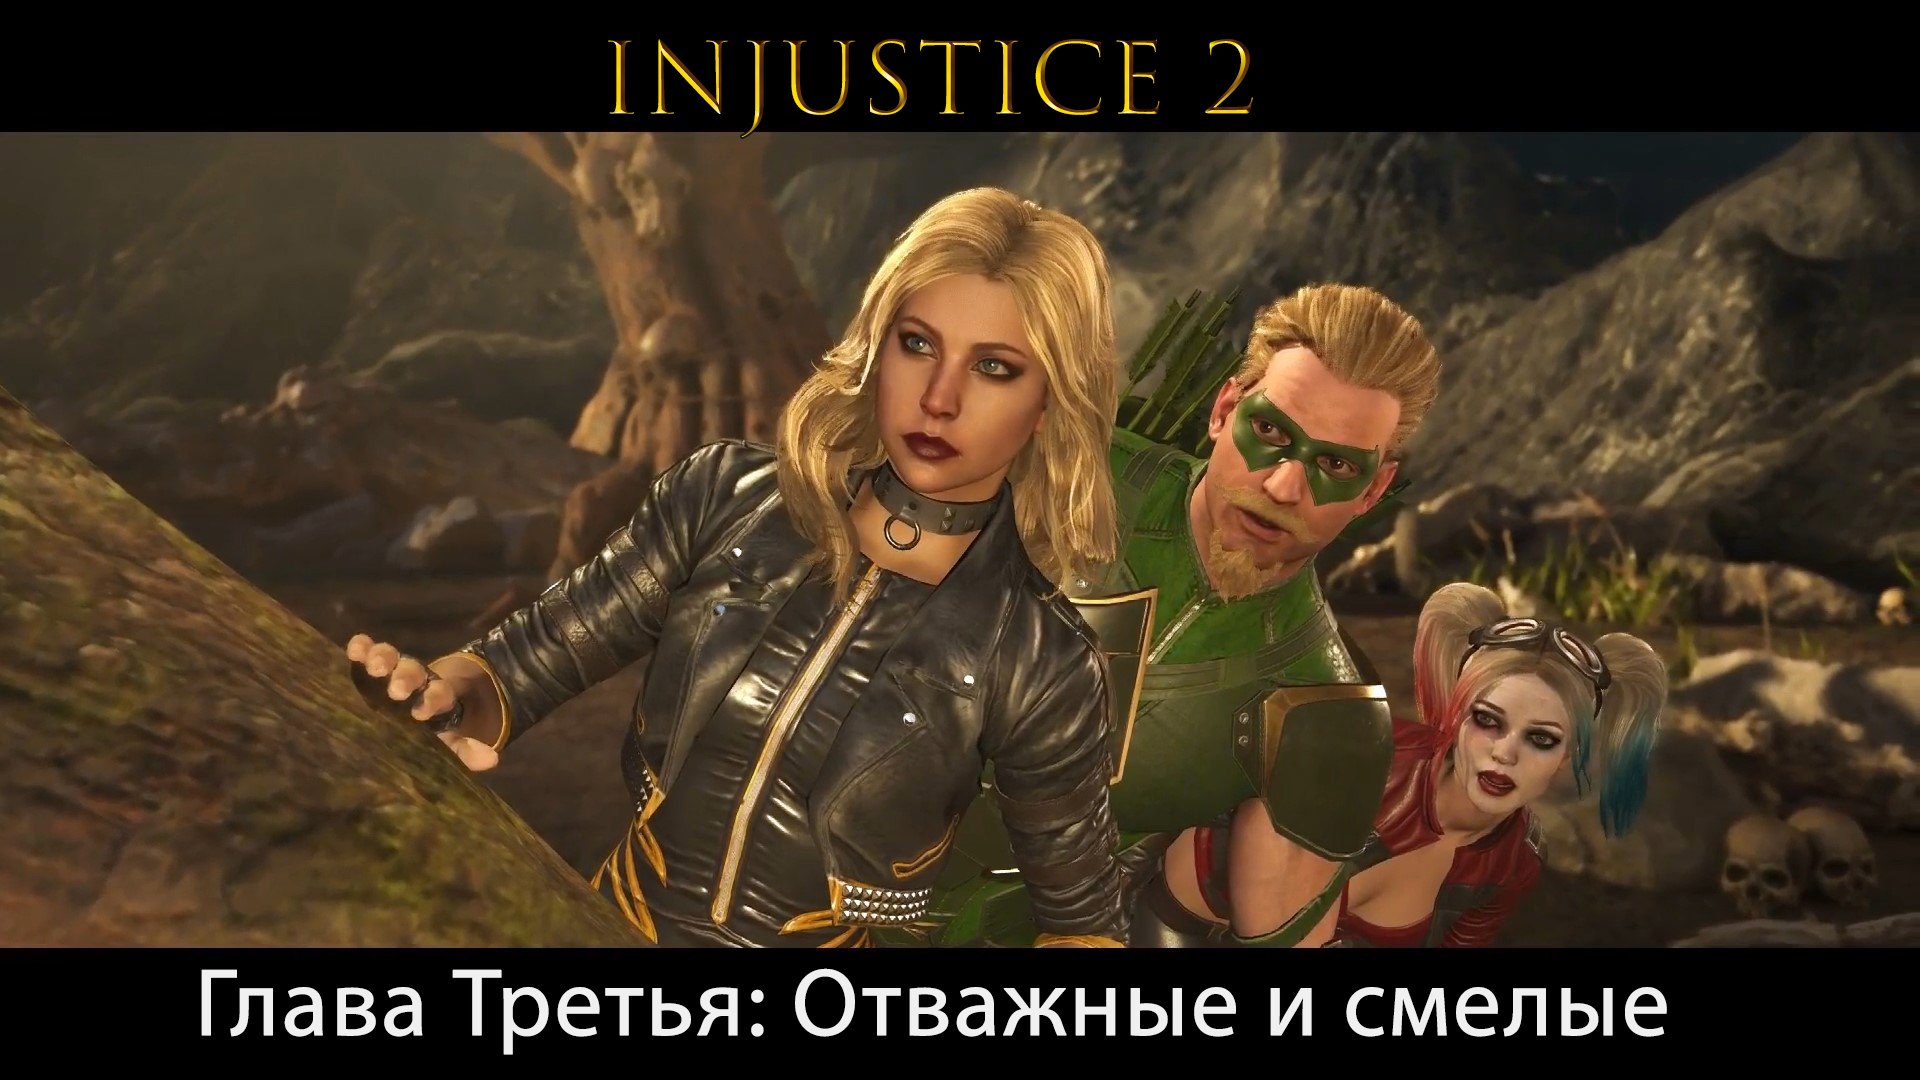 Injustice 2 - Глава 3 Отважные и смелые (Сюжет) (Gameplay)